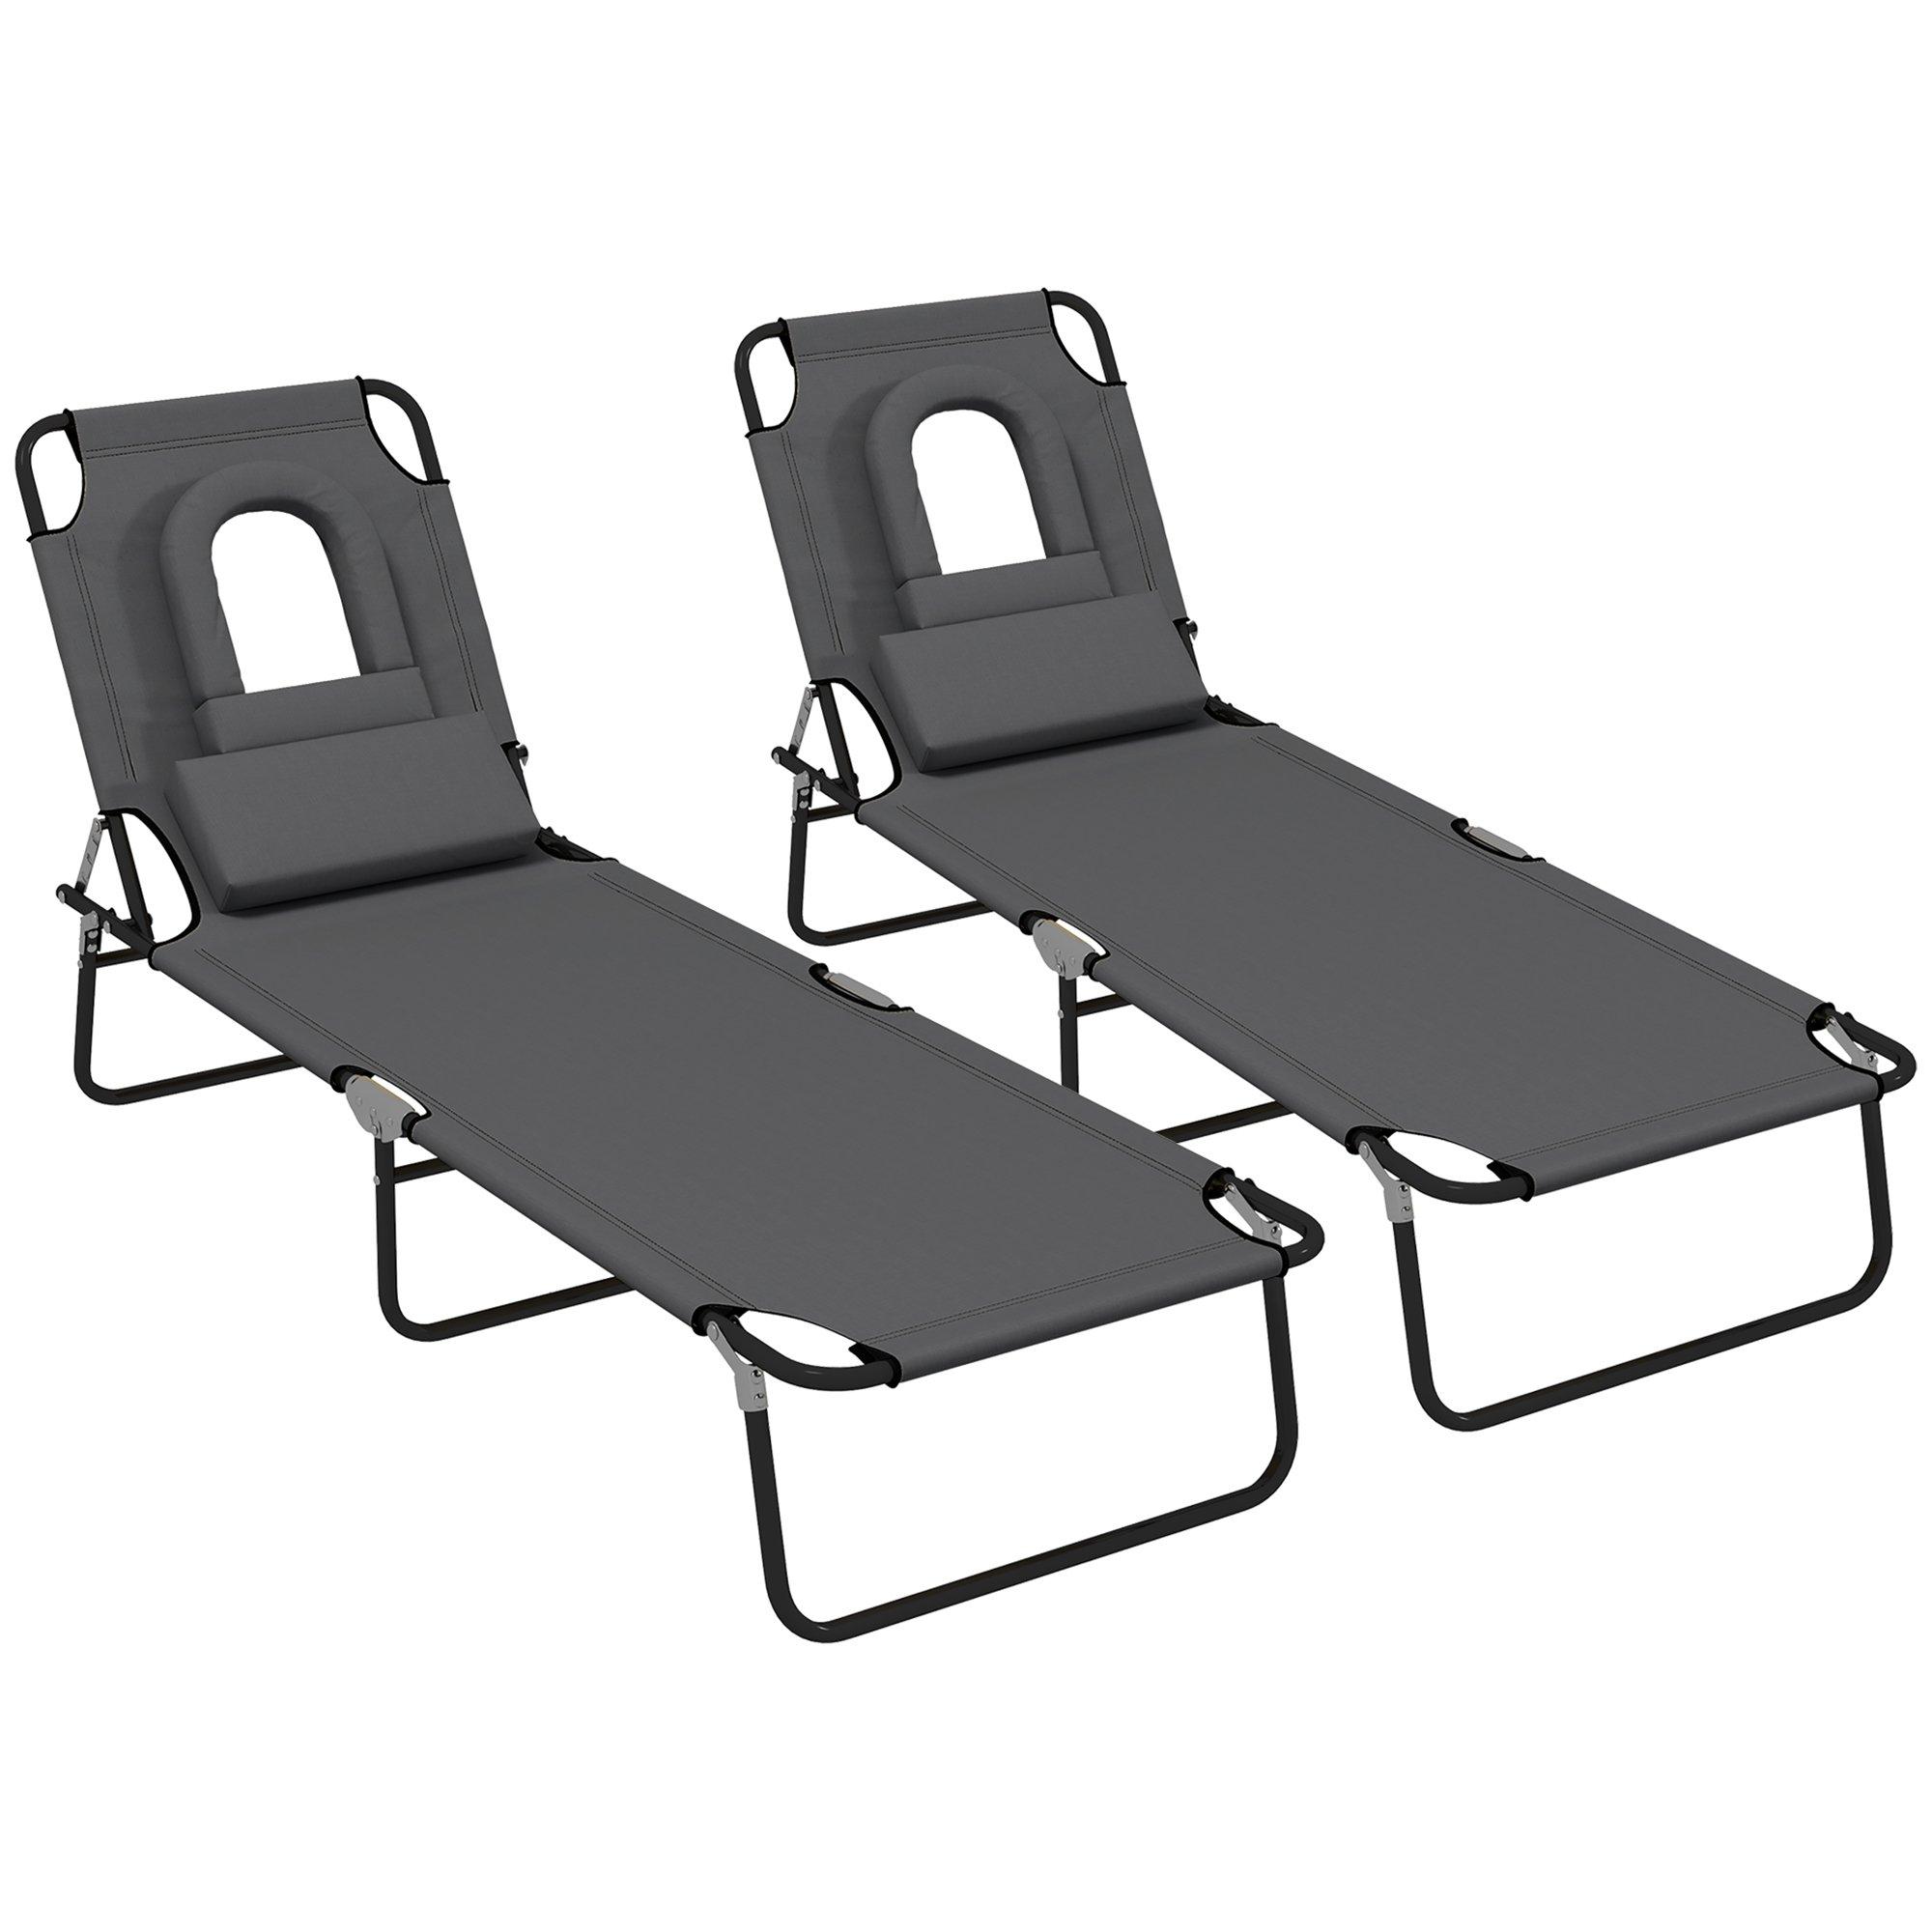 Sun Lounger Set of 2 Folding Recliner Chair Portable Reclining Garden Seat